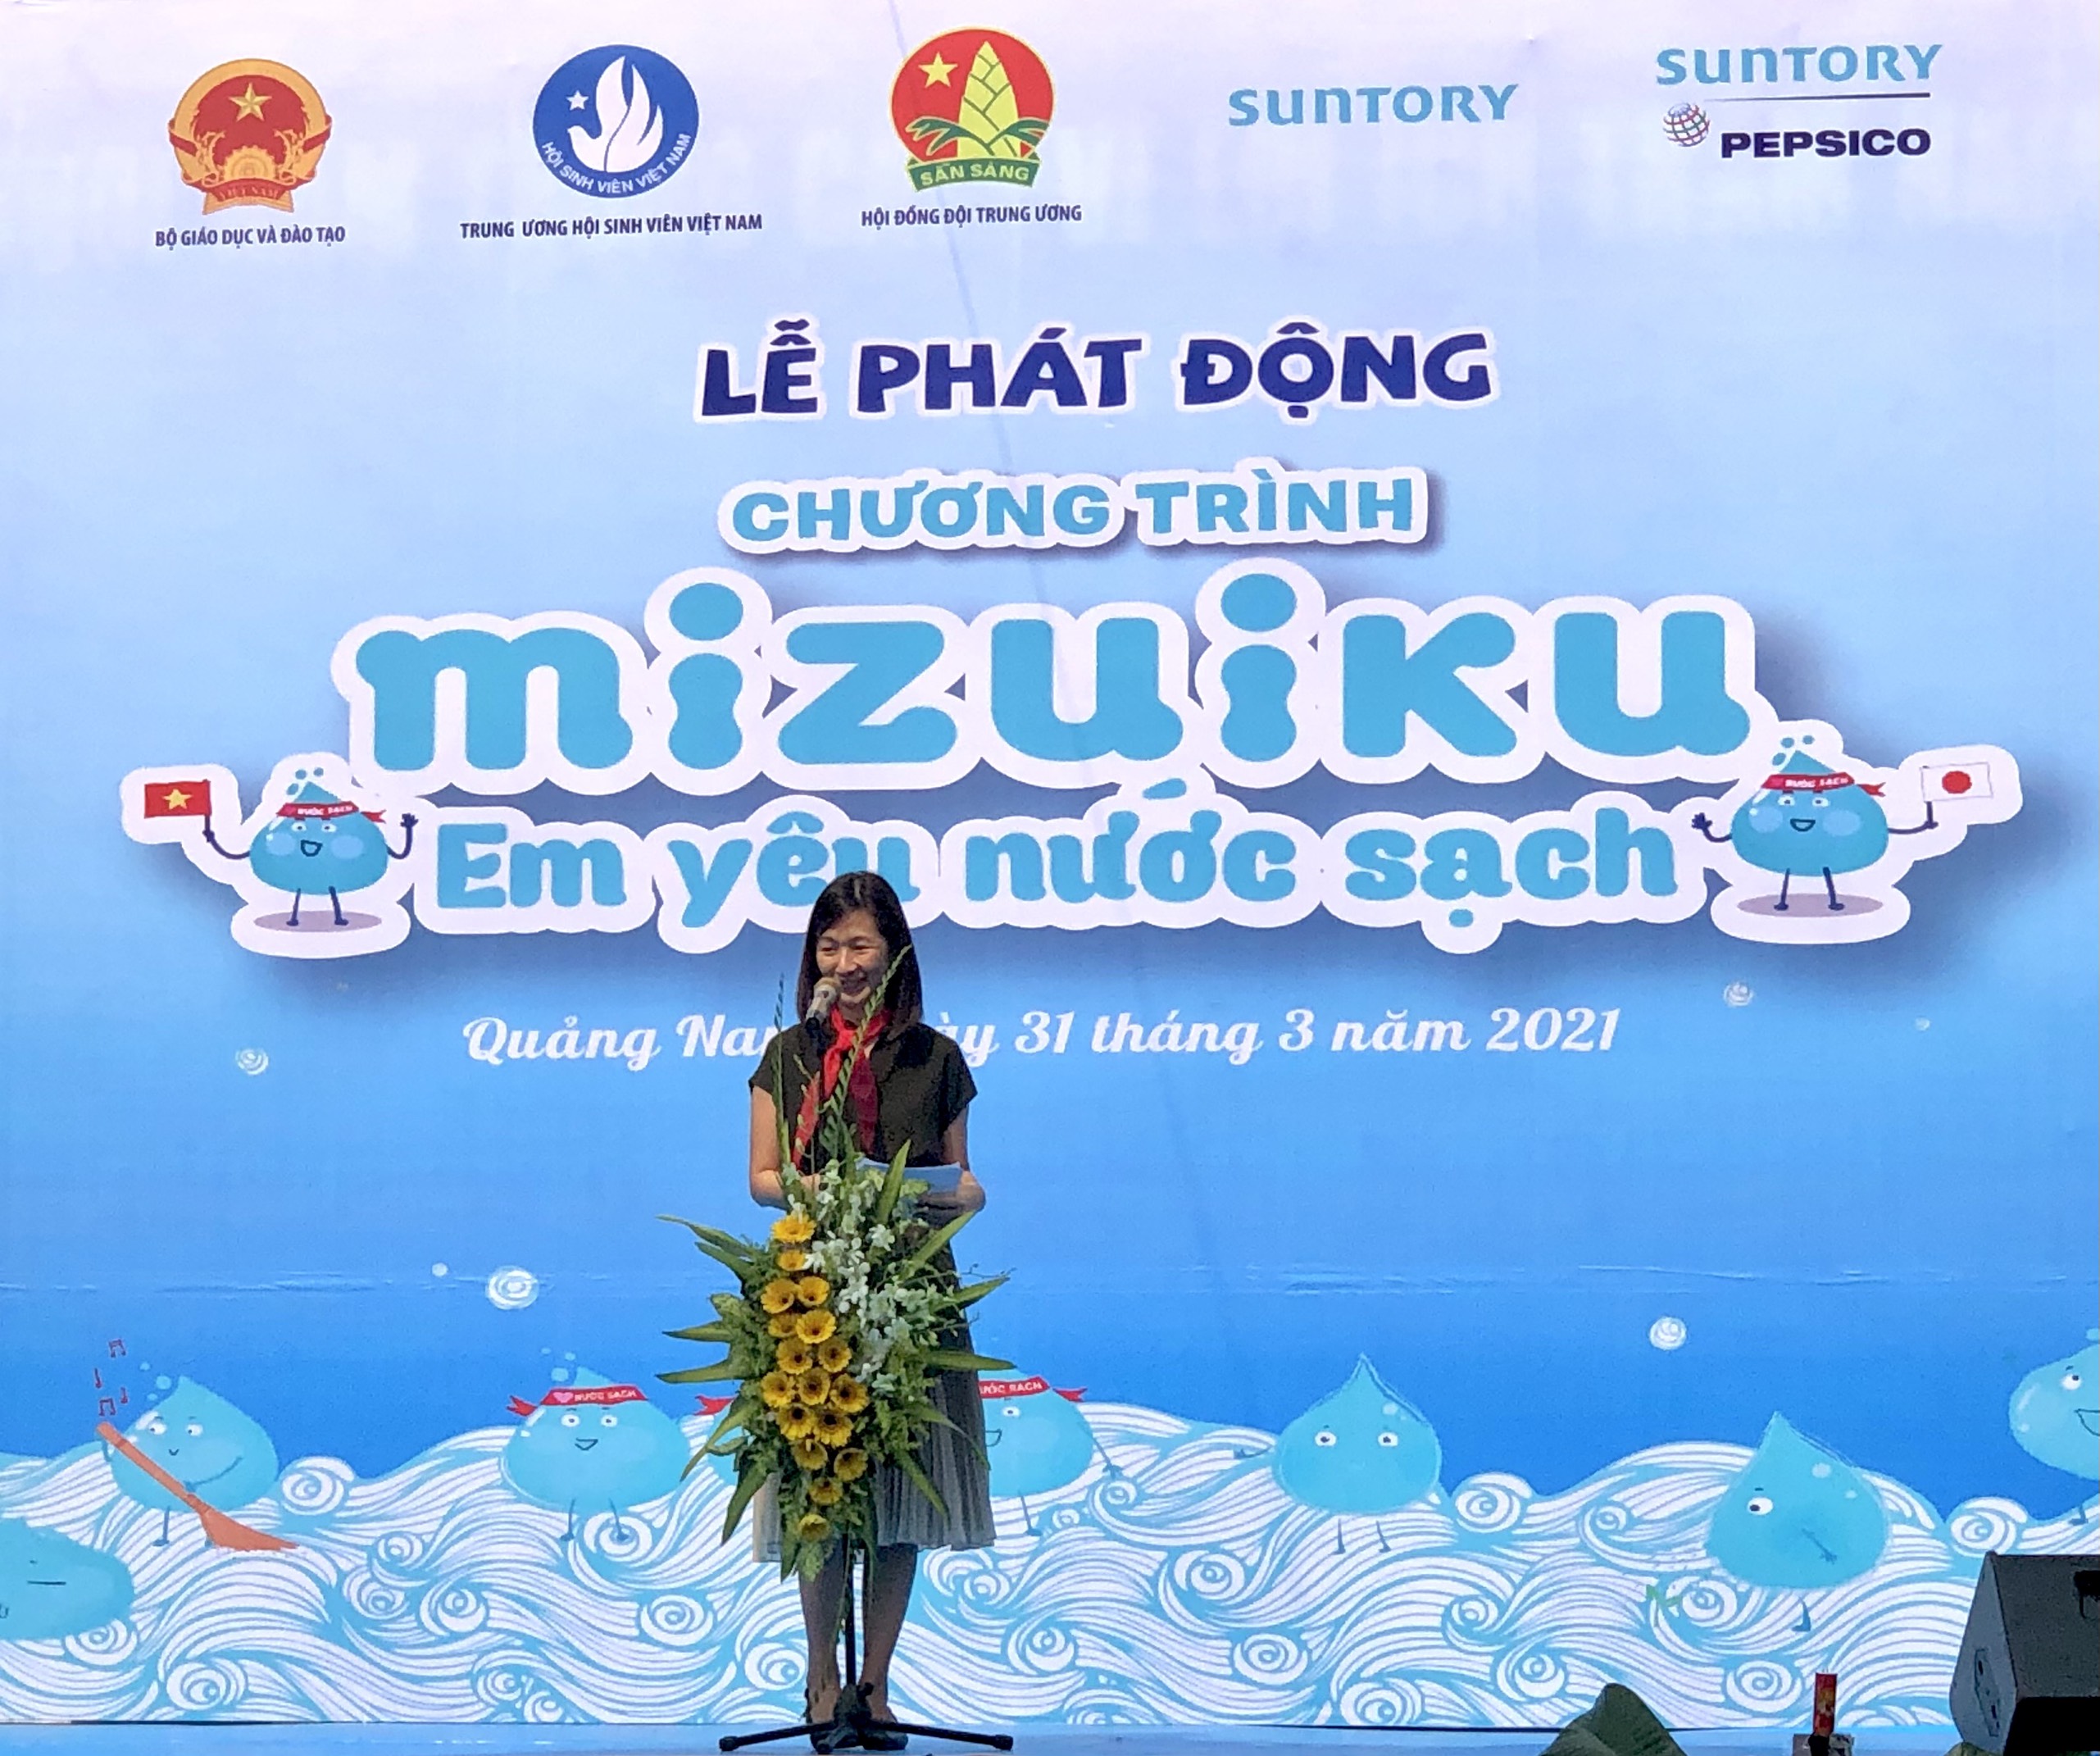 “Mizuiku – Em yêu nước sạch” Chương trình giáo dục về bảo vệ nguồn nước từ Nhật Bản, tiếp tục được triển khai tại Việt Nam với nhiều dấu ấn ý nghĩa cho cộng đồng     